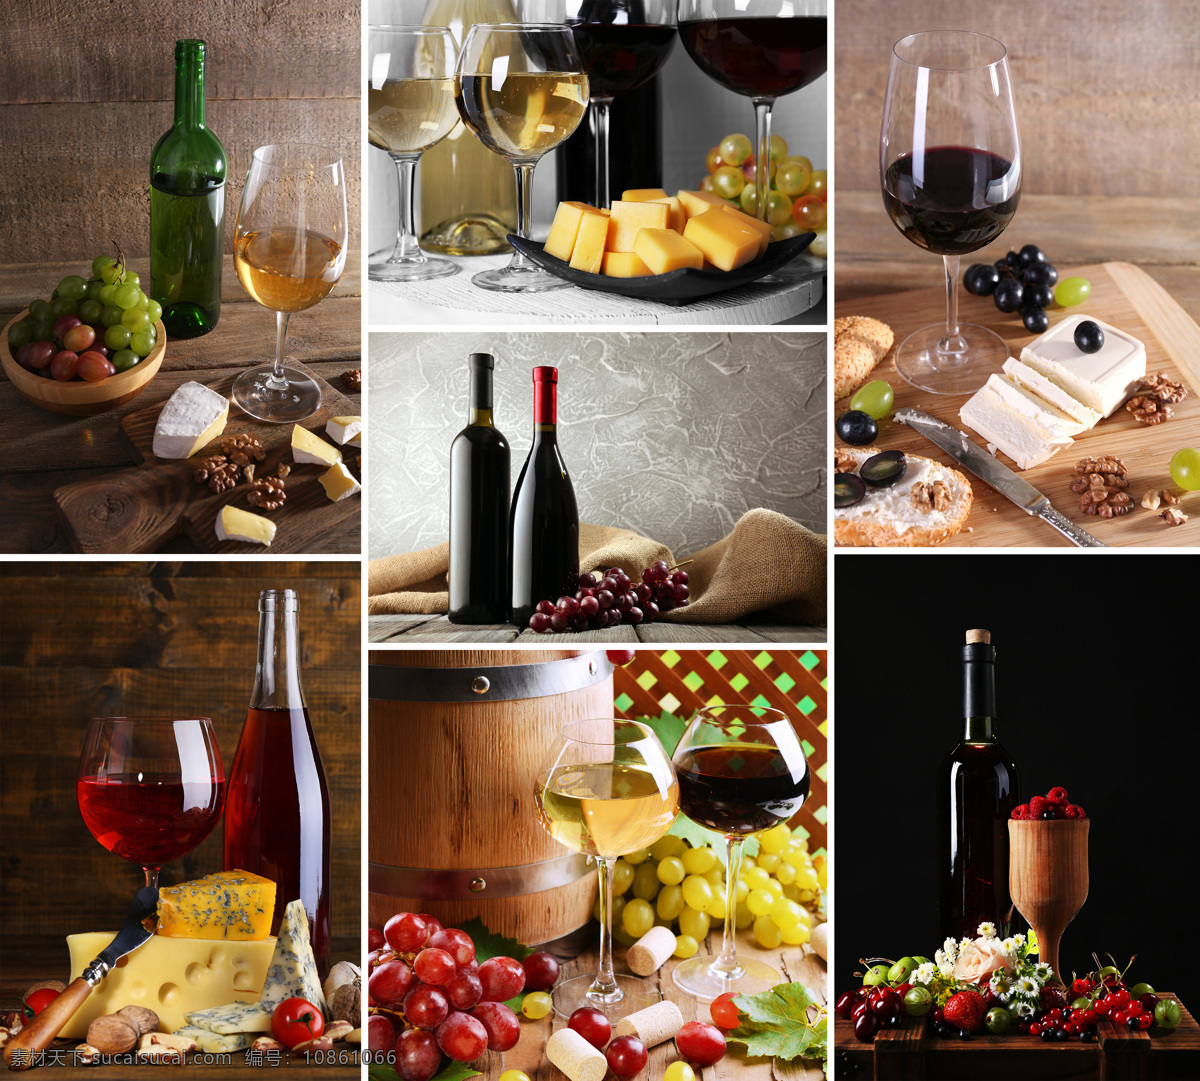 葡萄酒 食物 餐厅美食 红酒 木桶 酒桶 葡萄 水果 面包 葡萄酒与食物 酒类图片 餐饮美食